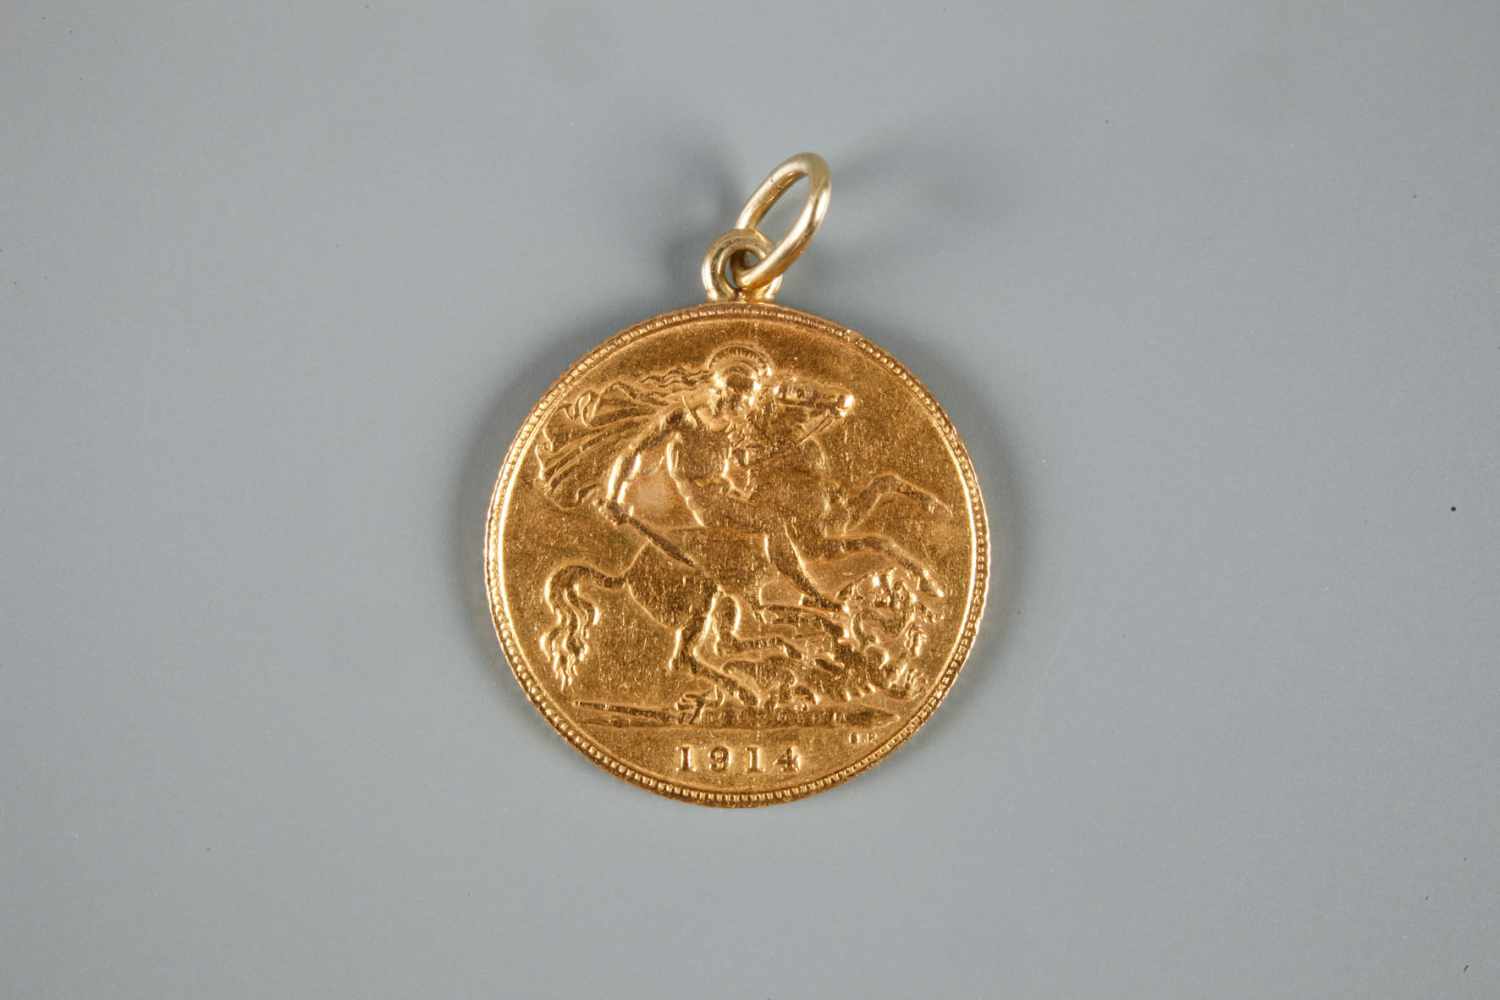 1/2 Sovereign gehenkelt Großbritannien 1914, 916er Gold, ss, G ges. mit Henkel (dieser ungeprüft) - Image 3 of 3